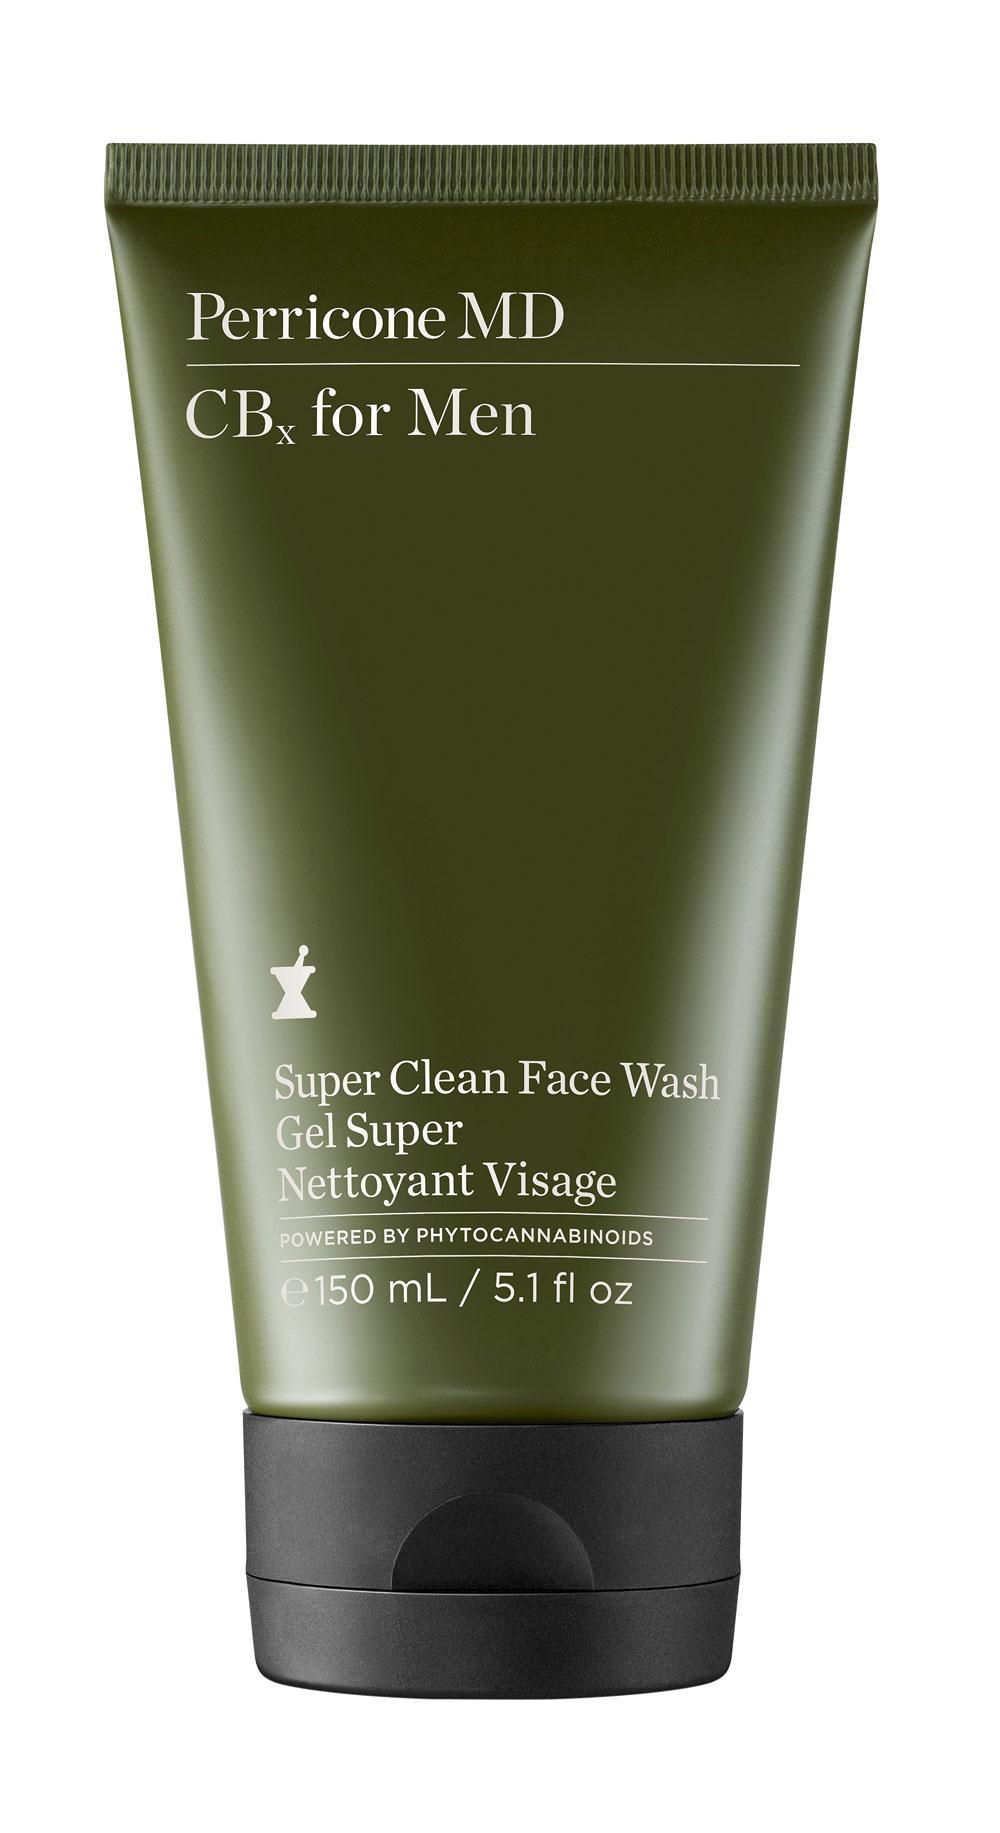 Tegen irritatie na het scheren: CBx for Men Super Clean Face Wash (37 euro) van Perricone MD.